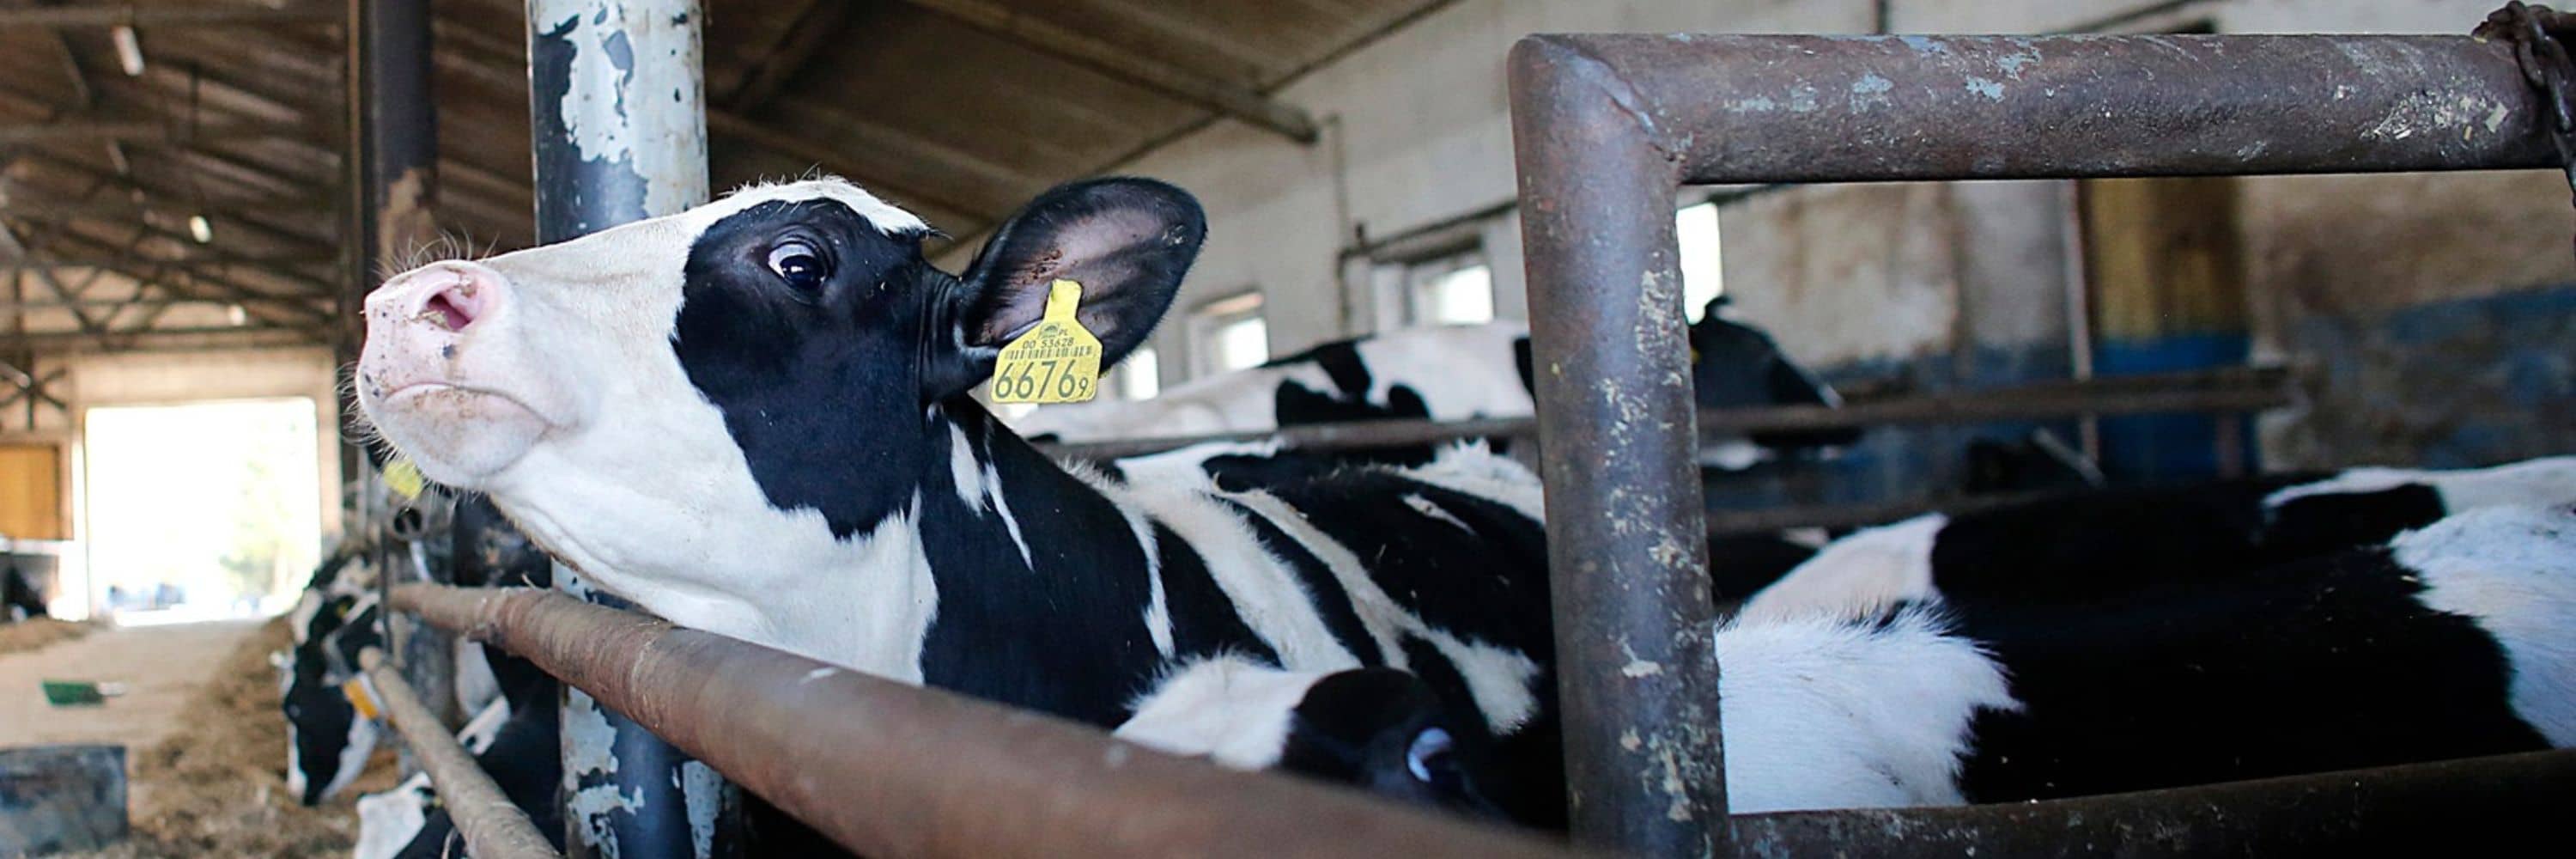 Una vaca mira a la cámara mientras apoya su cabeza sobre la barra de metal del corral del establo de una granja lechera.